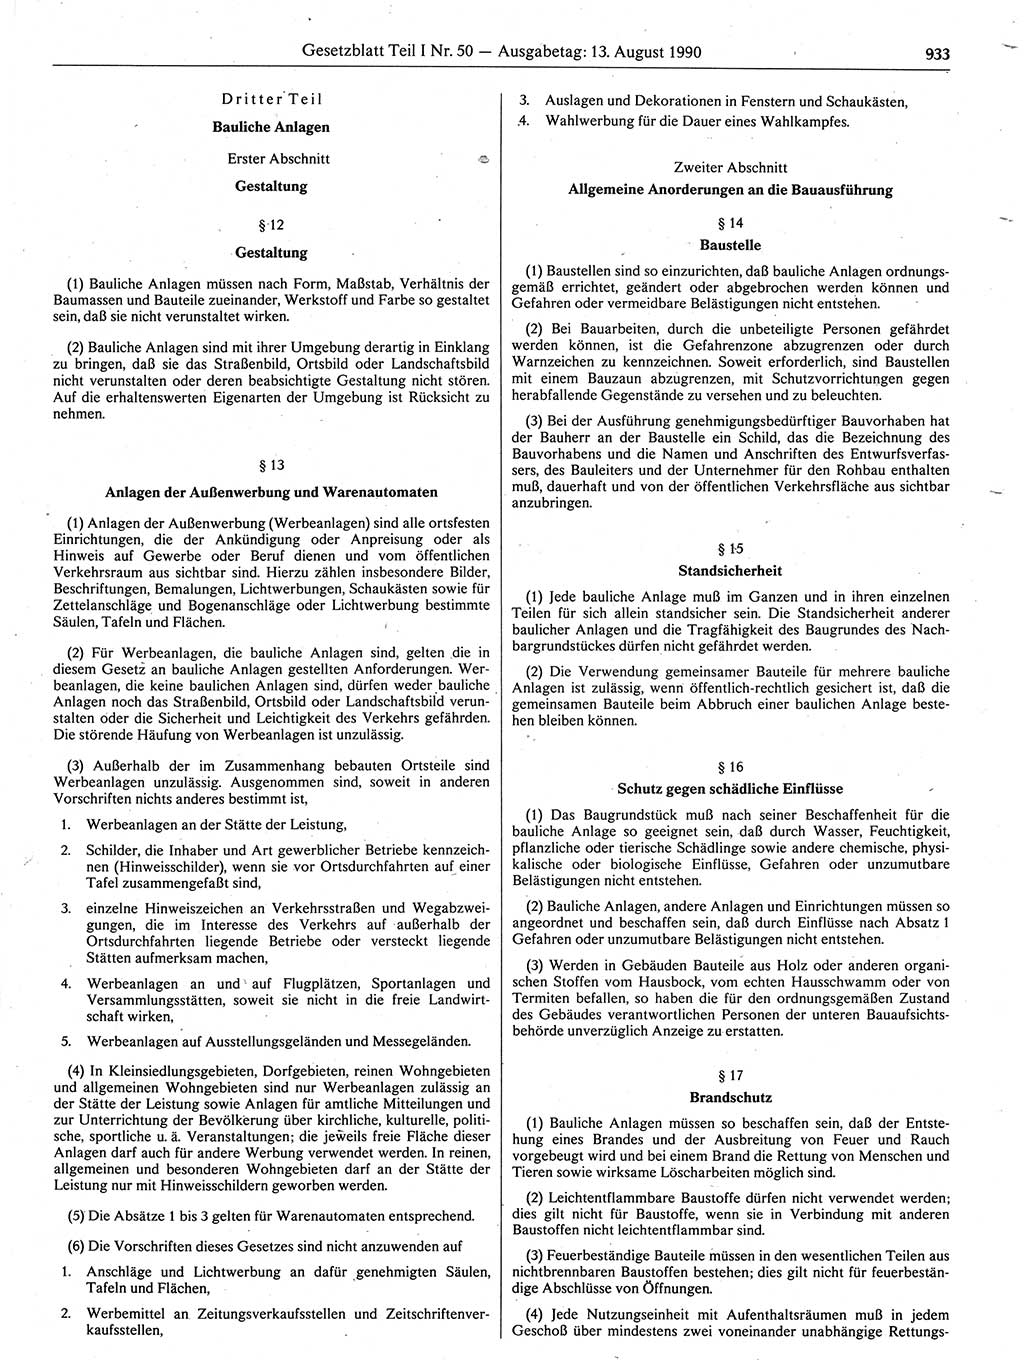 Gesetzblatt (GBl.) der Deutschen Demokratischen Republik (DDR) Teil Ⅰ 1990, Seite 933 (GBl. DDR Ⅰ 1990, S. 933)